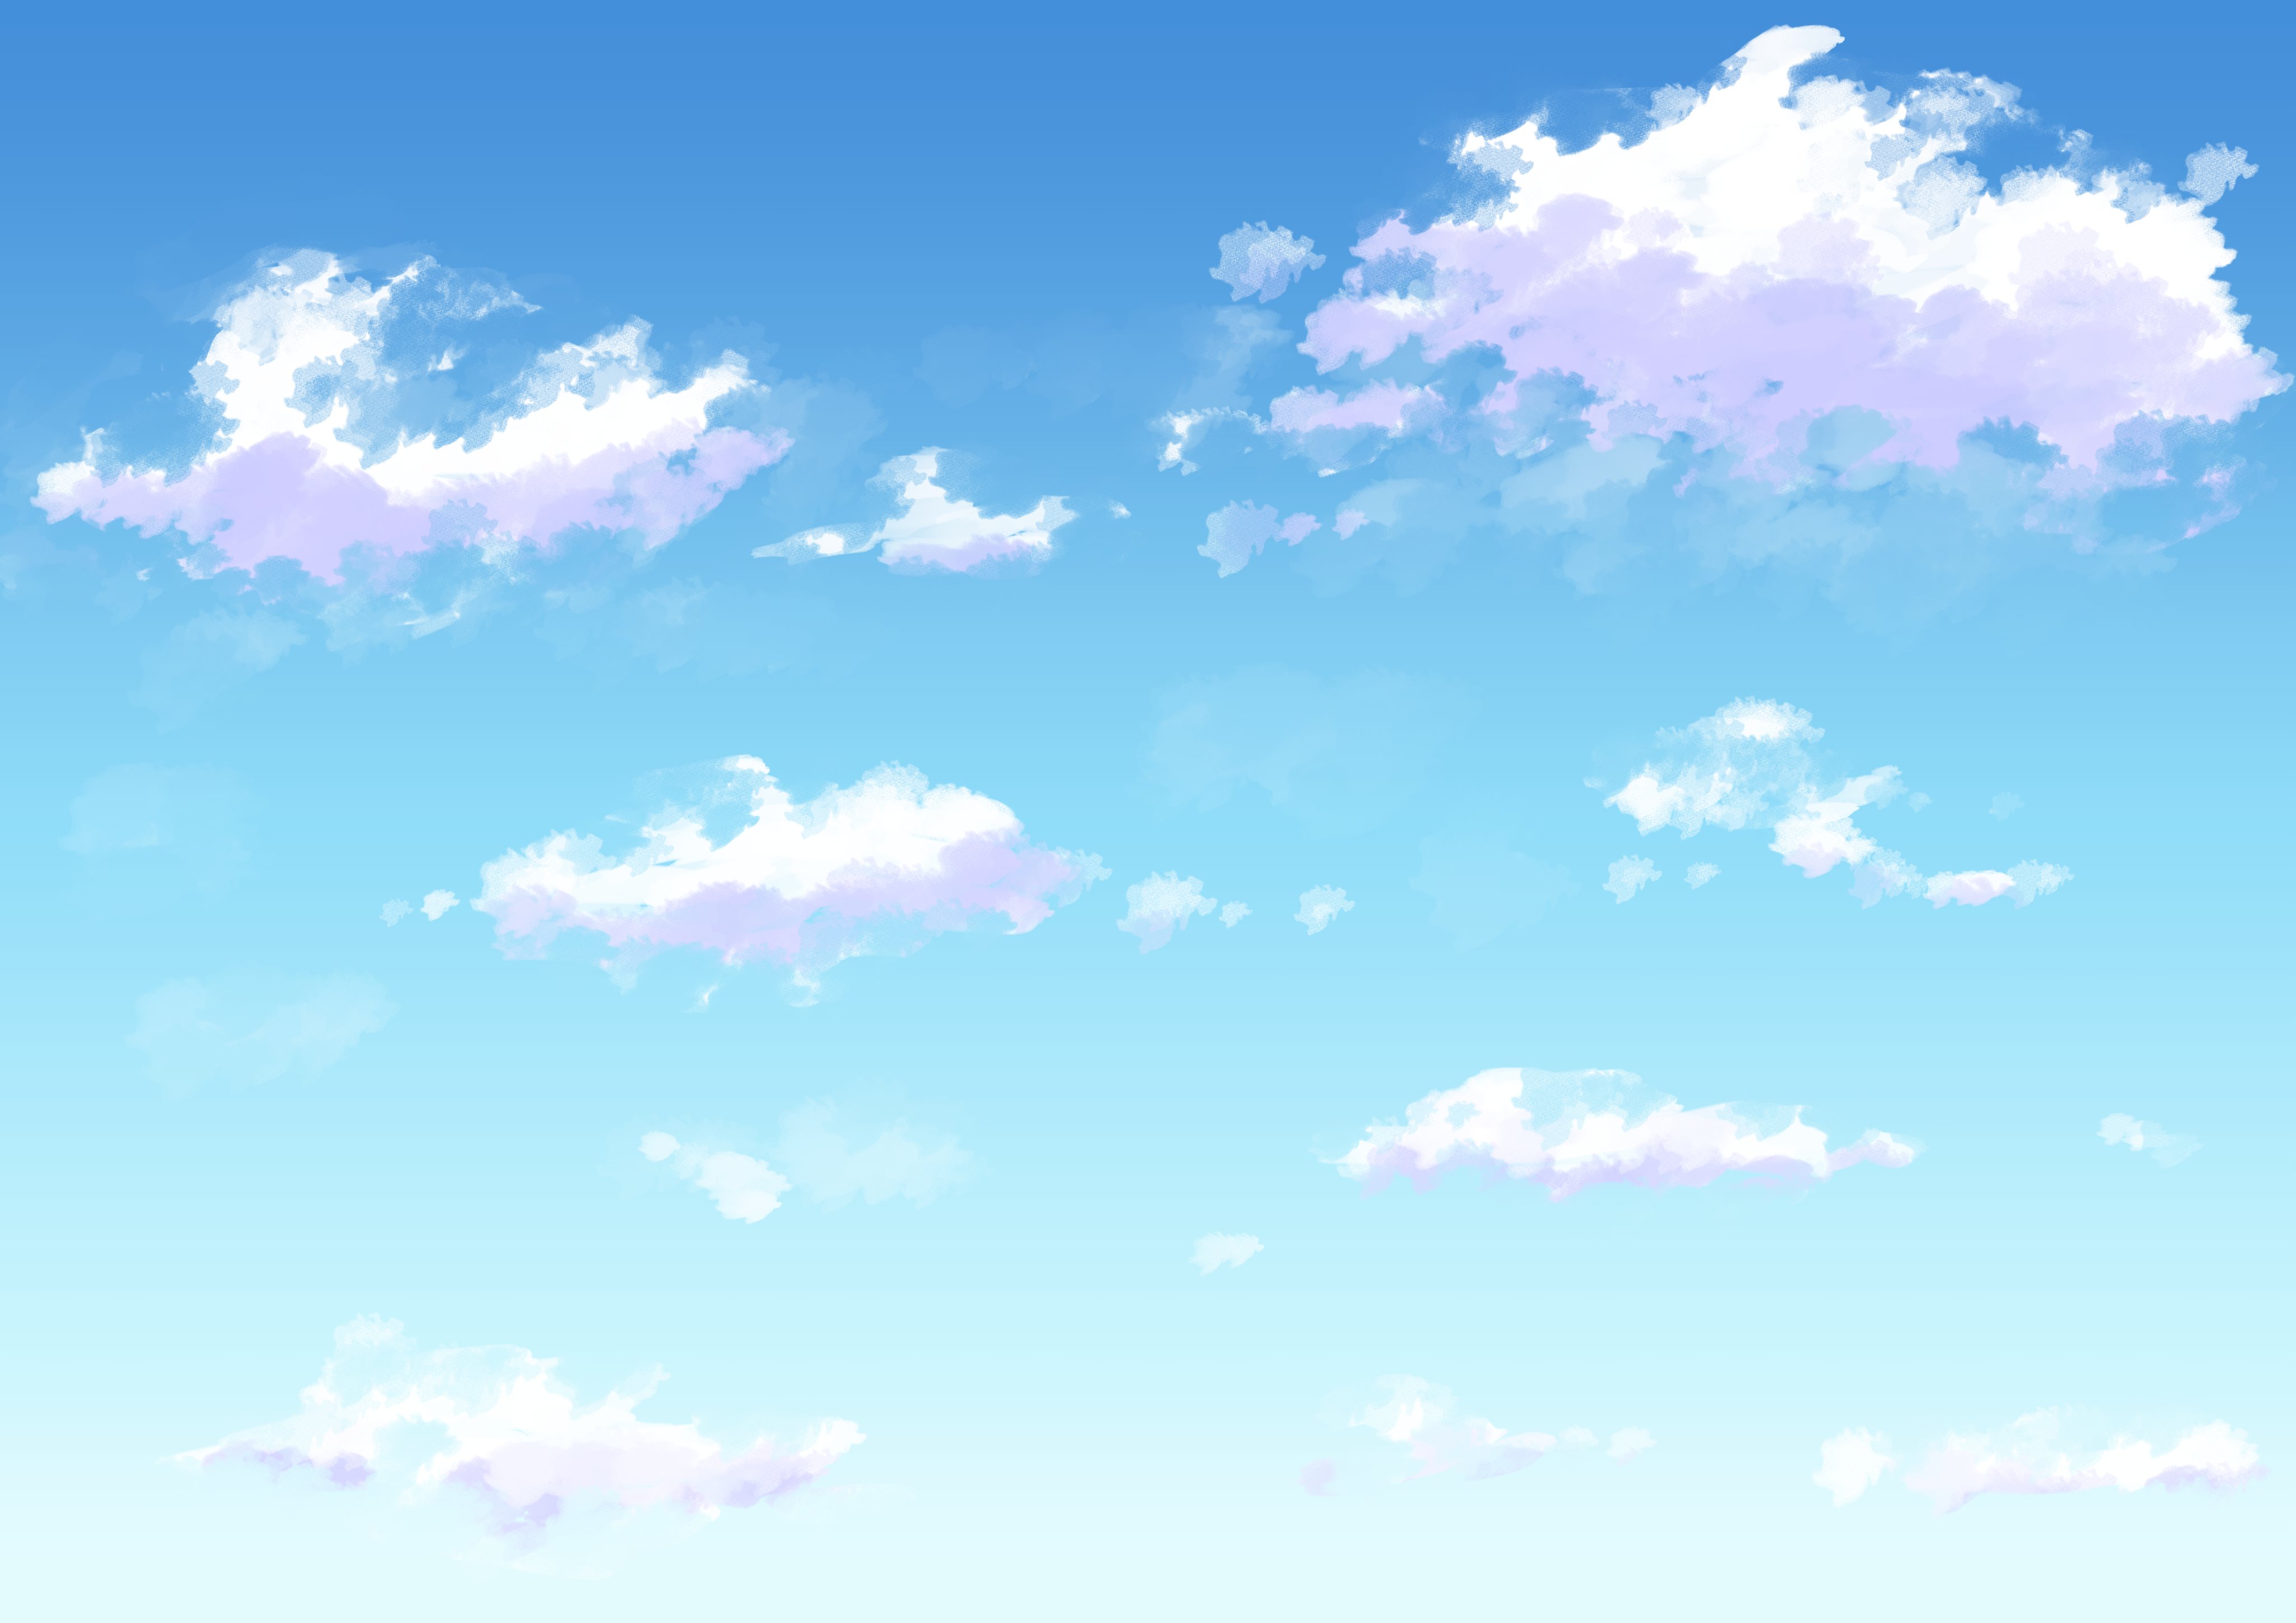 マオ Sur Twitter 空のフリー背景セットを描きました 空 イラスト フリー素材 夜空 入道雲 オリジナル Illustration 月 雲 T Co Luvwwroygl Twitter